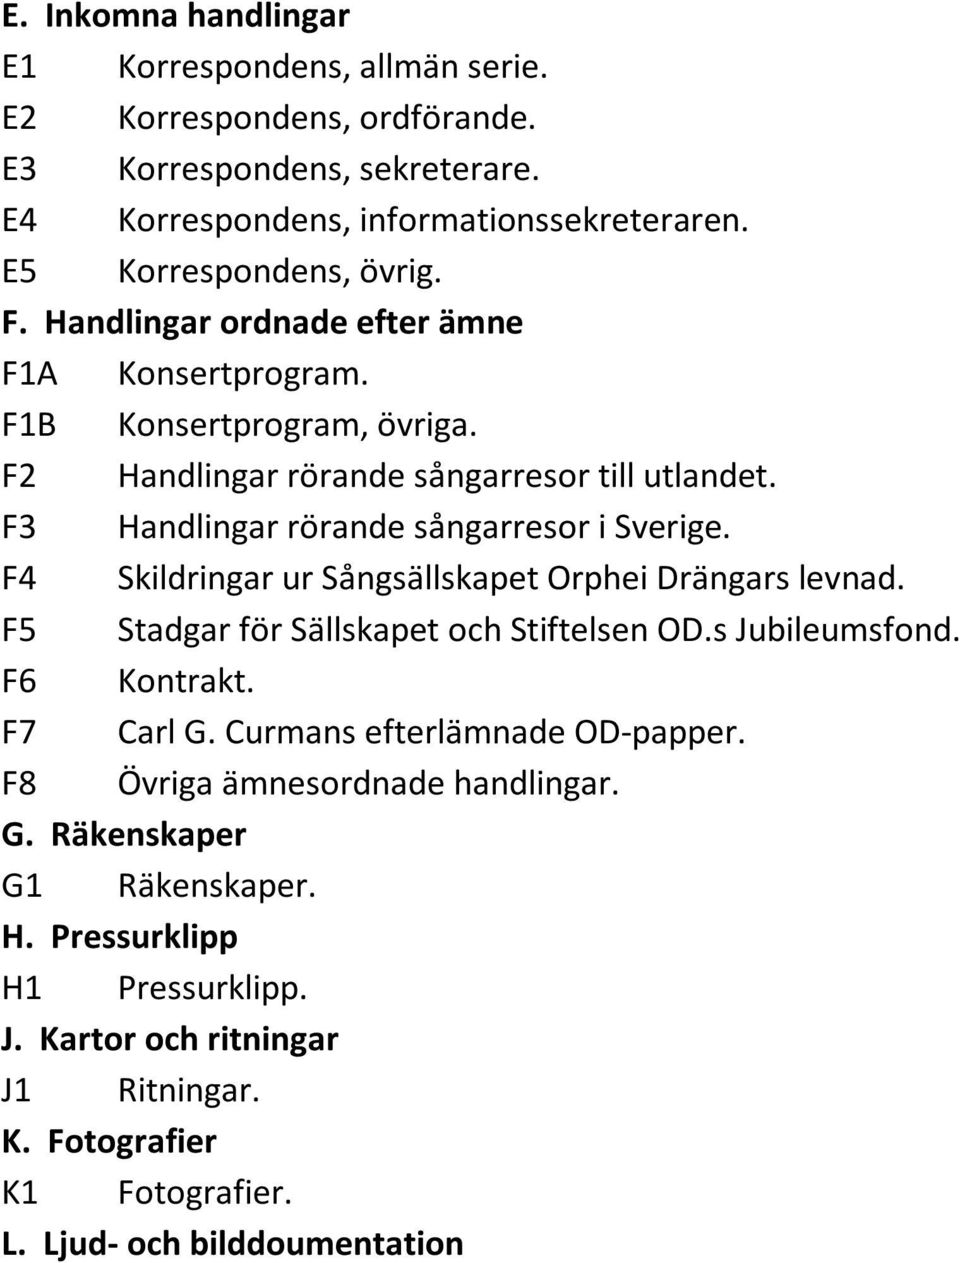 F4 Skildringar ur Sångsällskapet Orphei Drängars levnad. F5 Stadgar för Sällskapet och Stiftelsen OD.s Jubileumsfond. F6 Kontrakt. F7 Carl G. Curmans efterlämnade OD-papper.